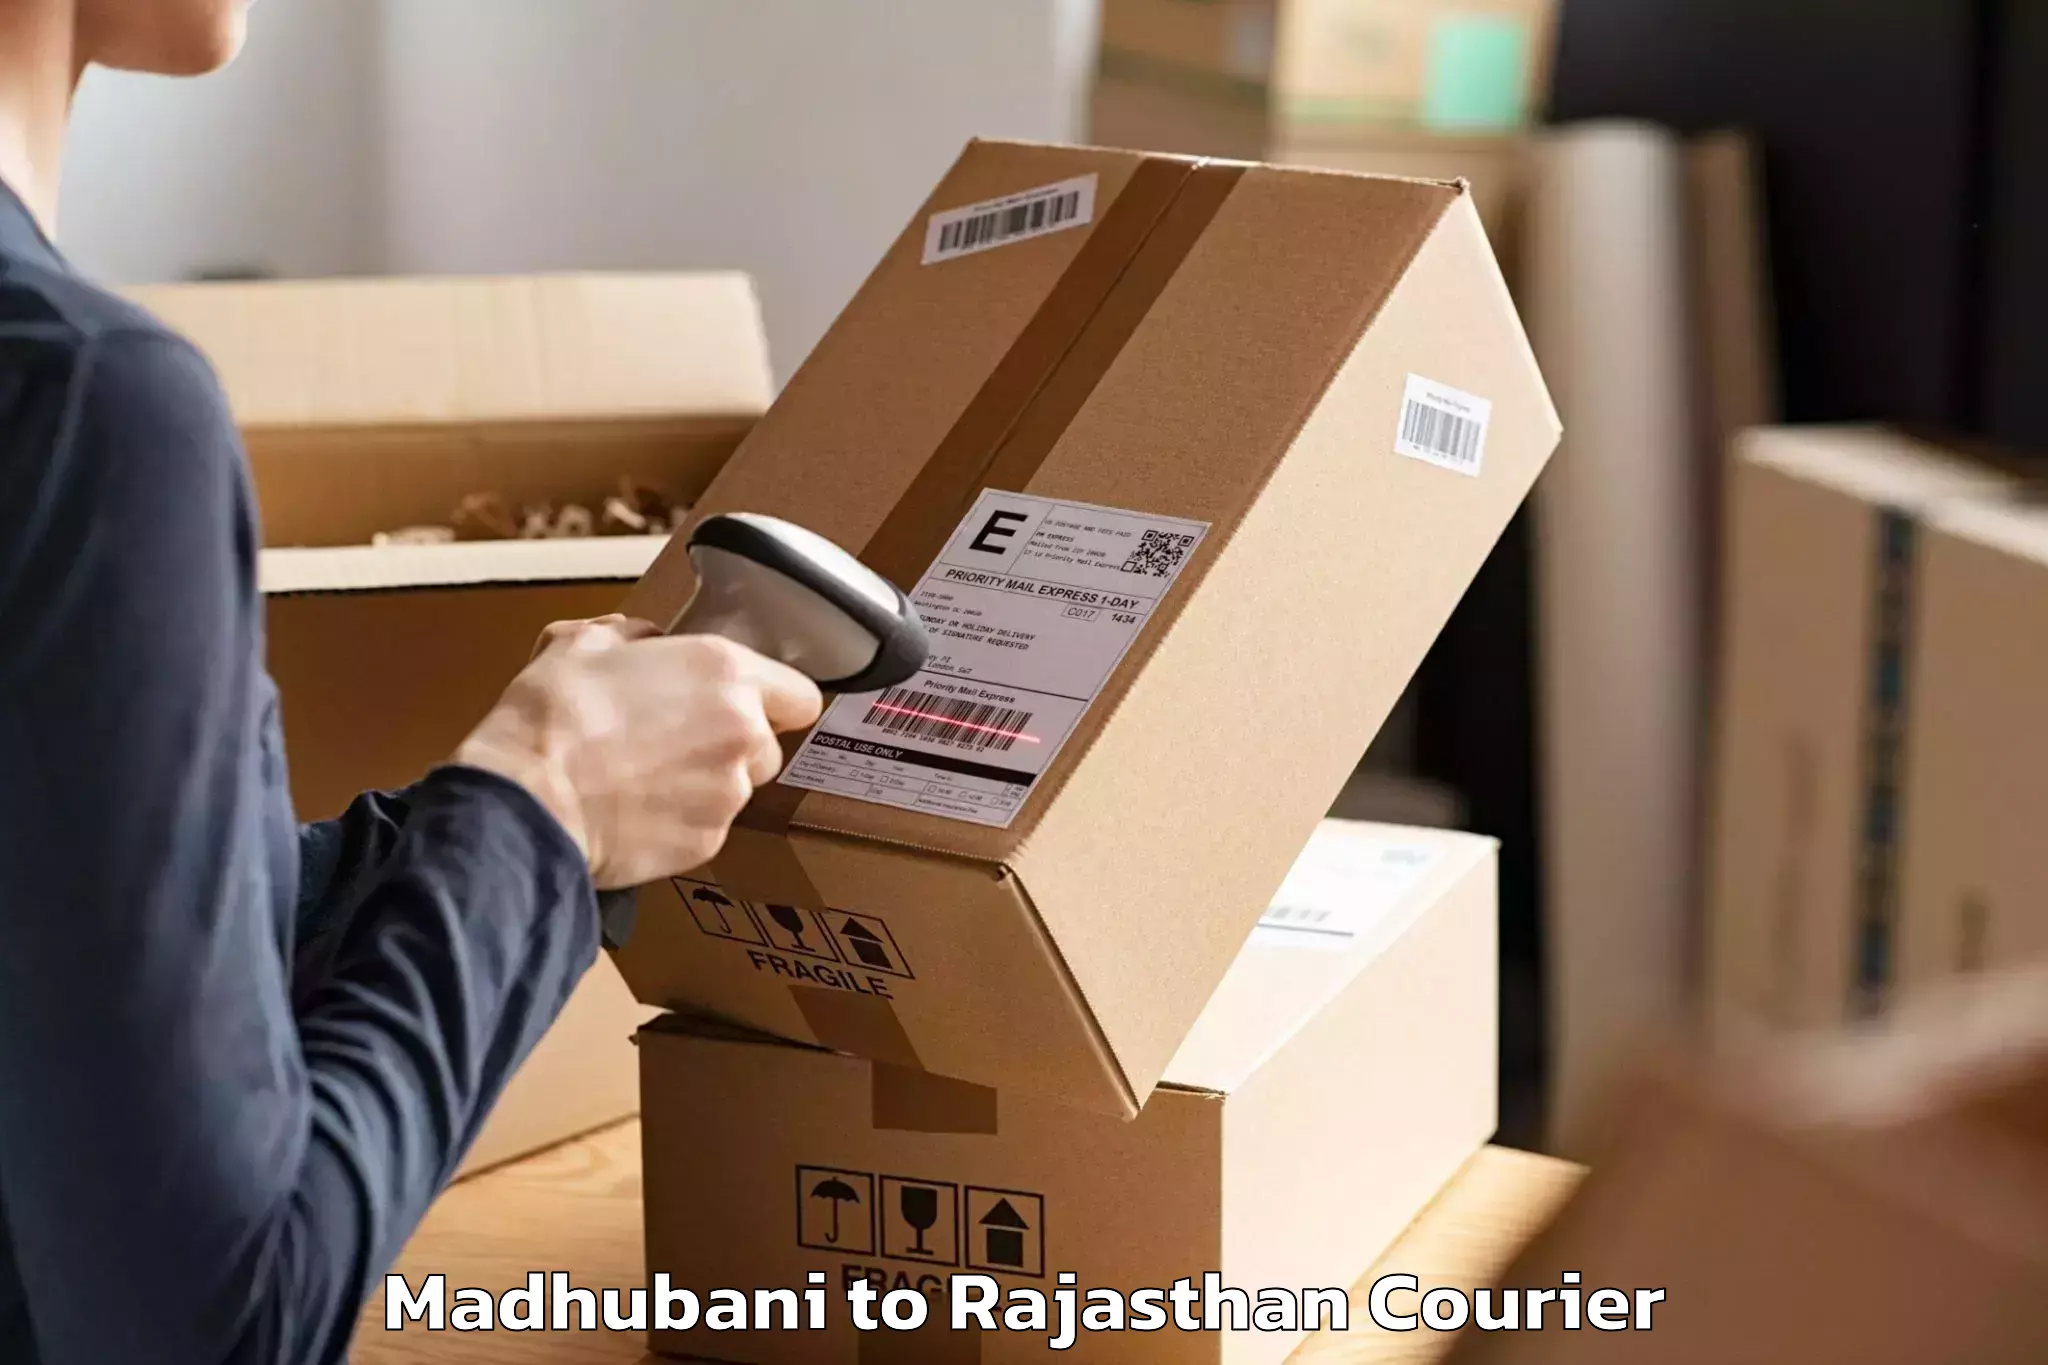 Furniture transport services Madhubani to Rajasthan